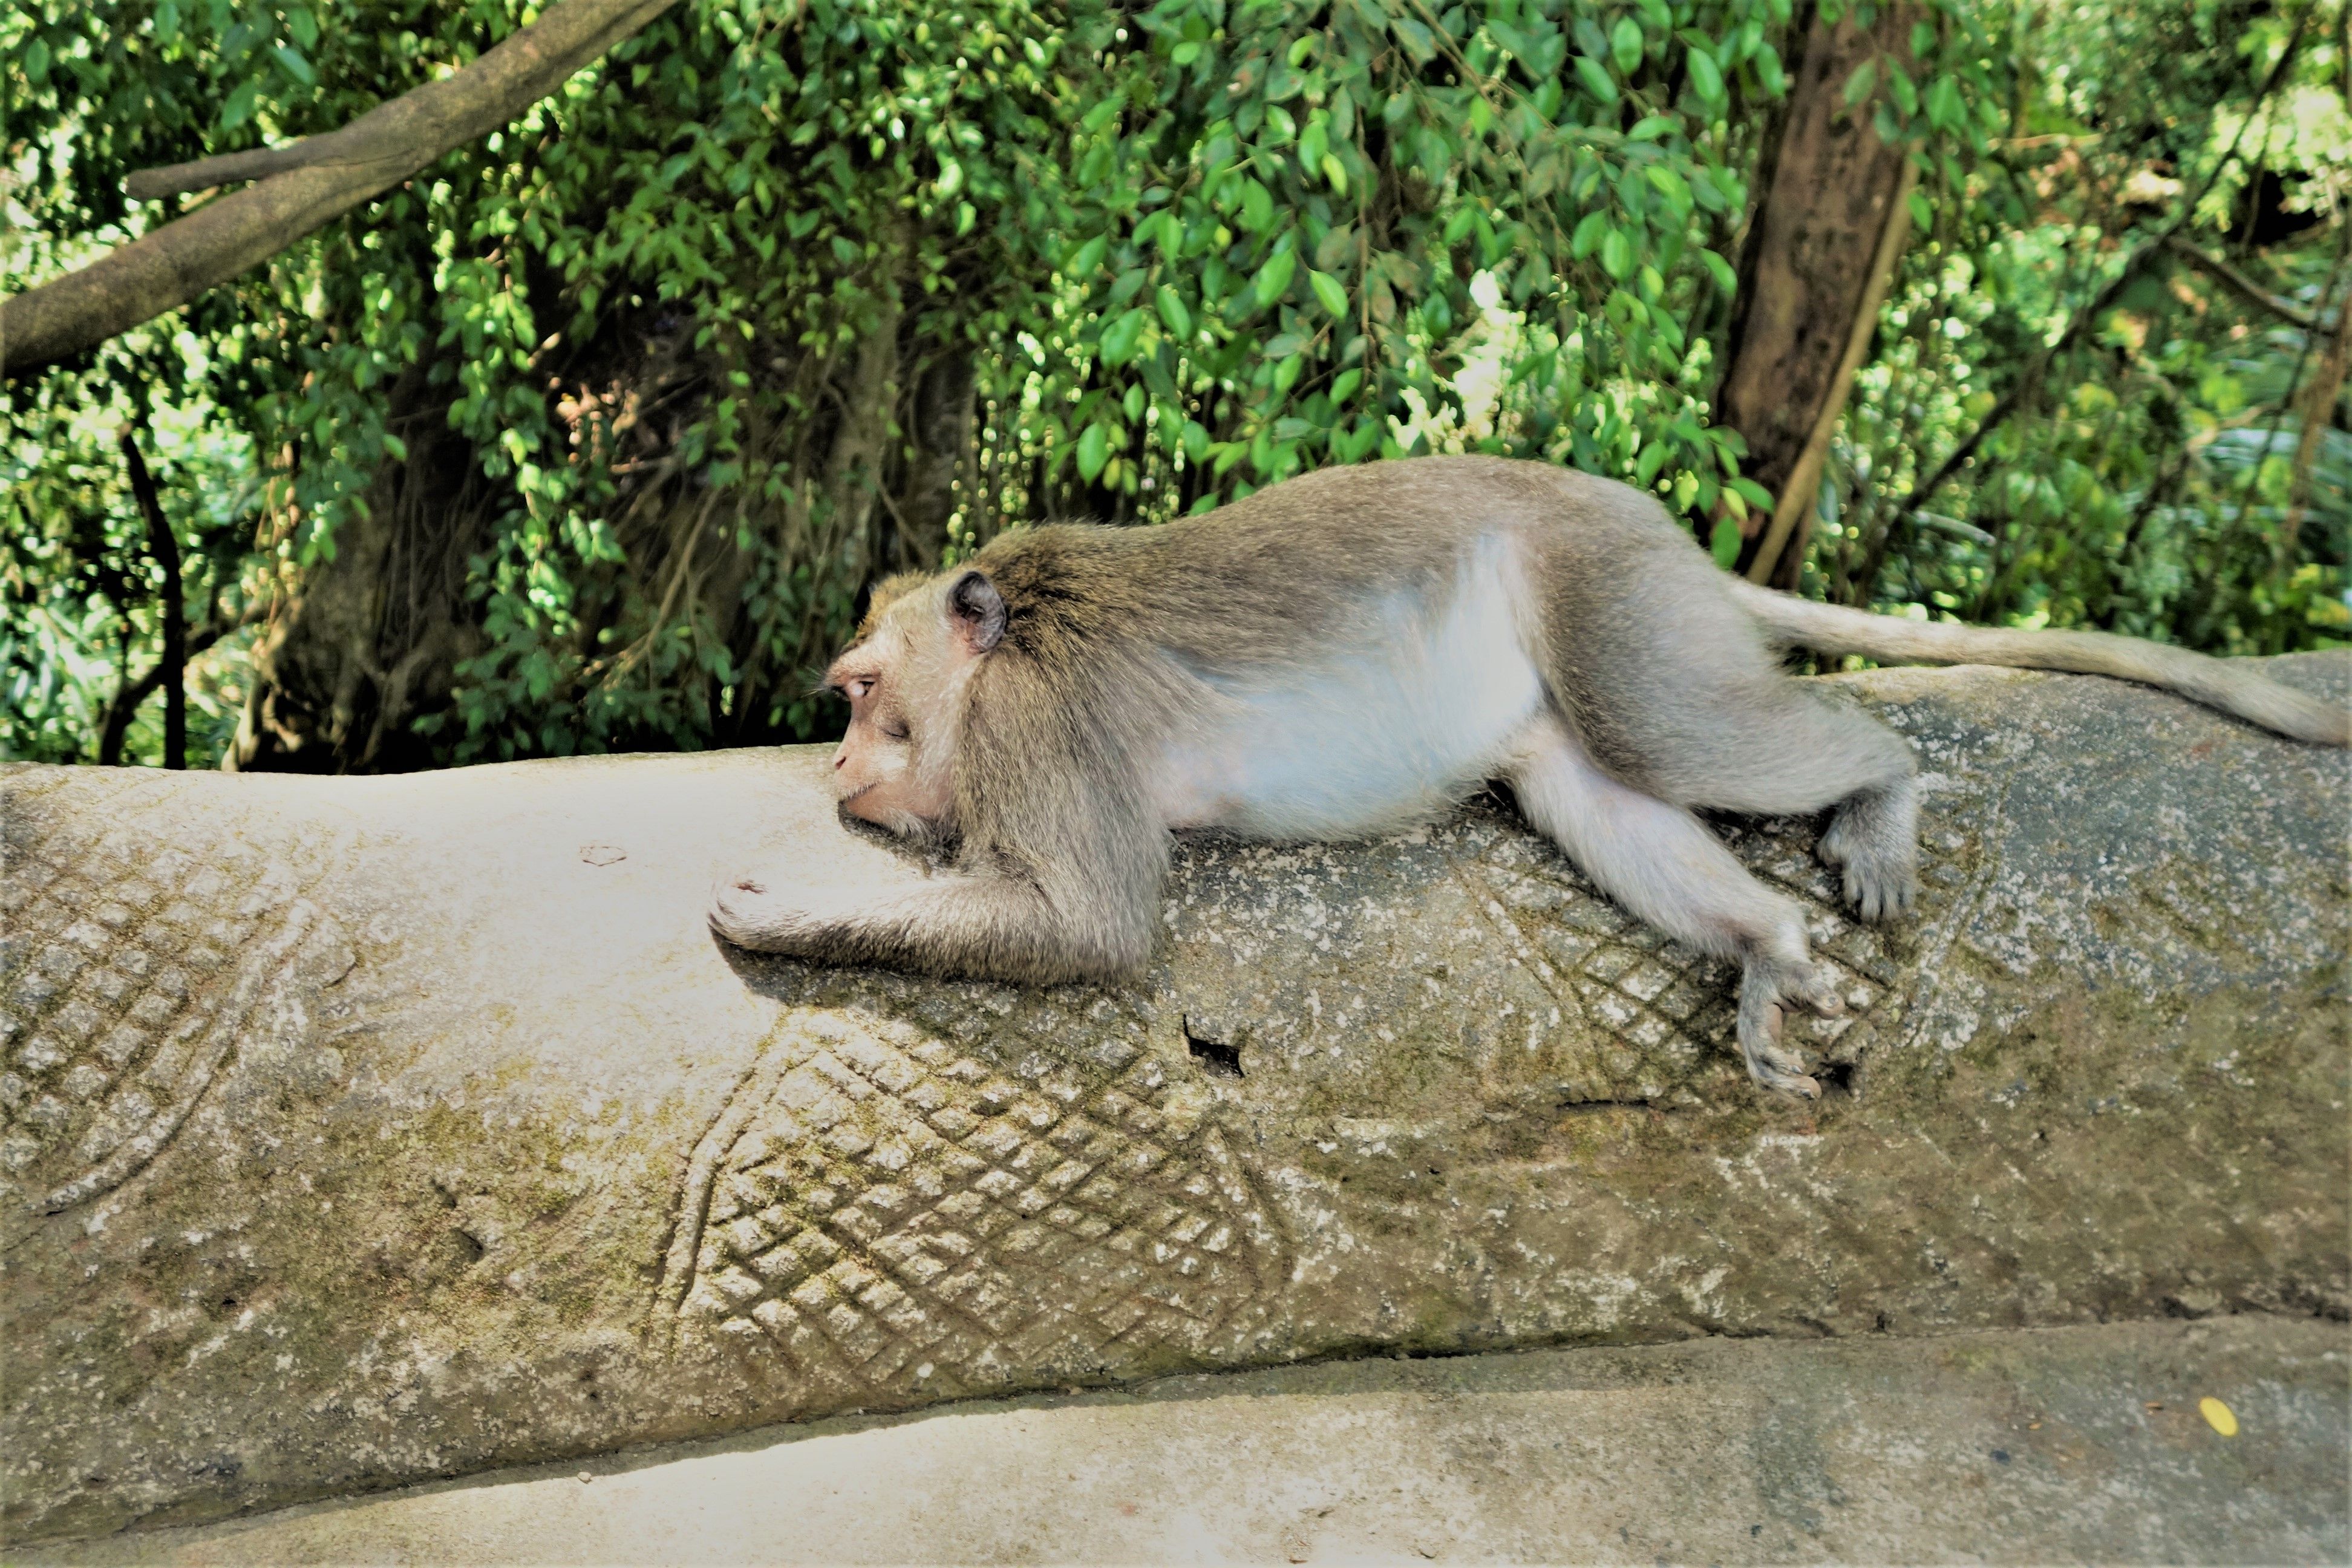 Ubud monkeys